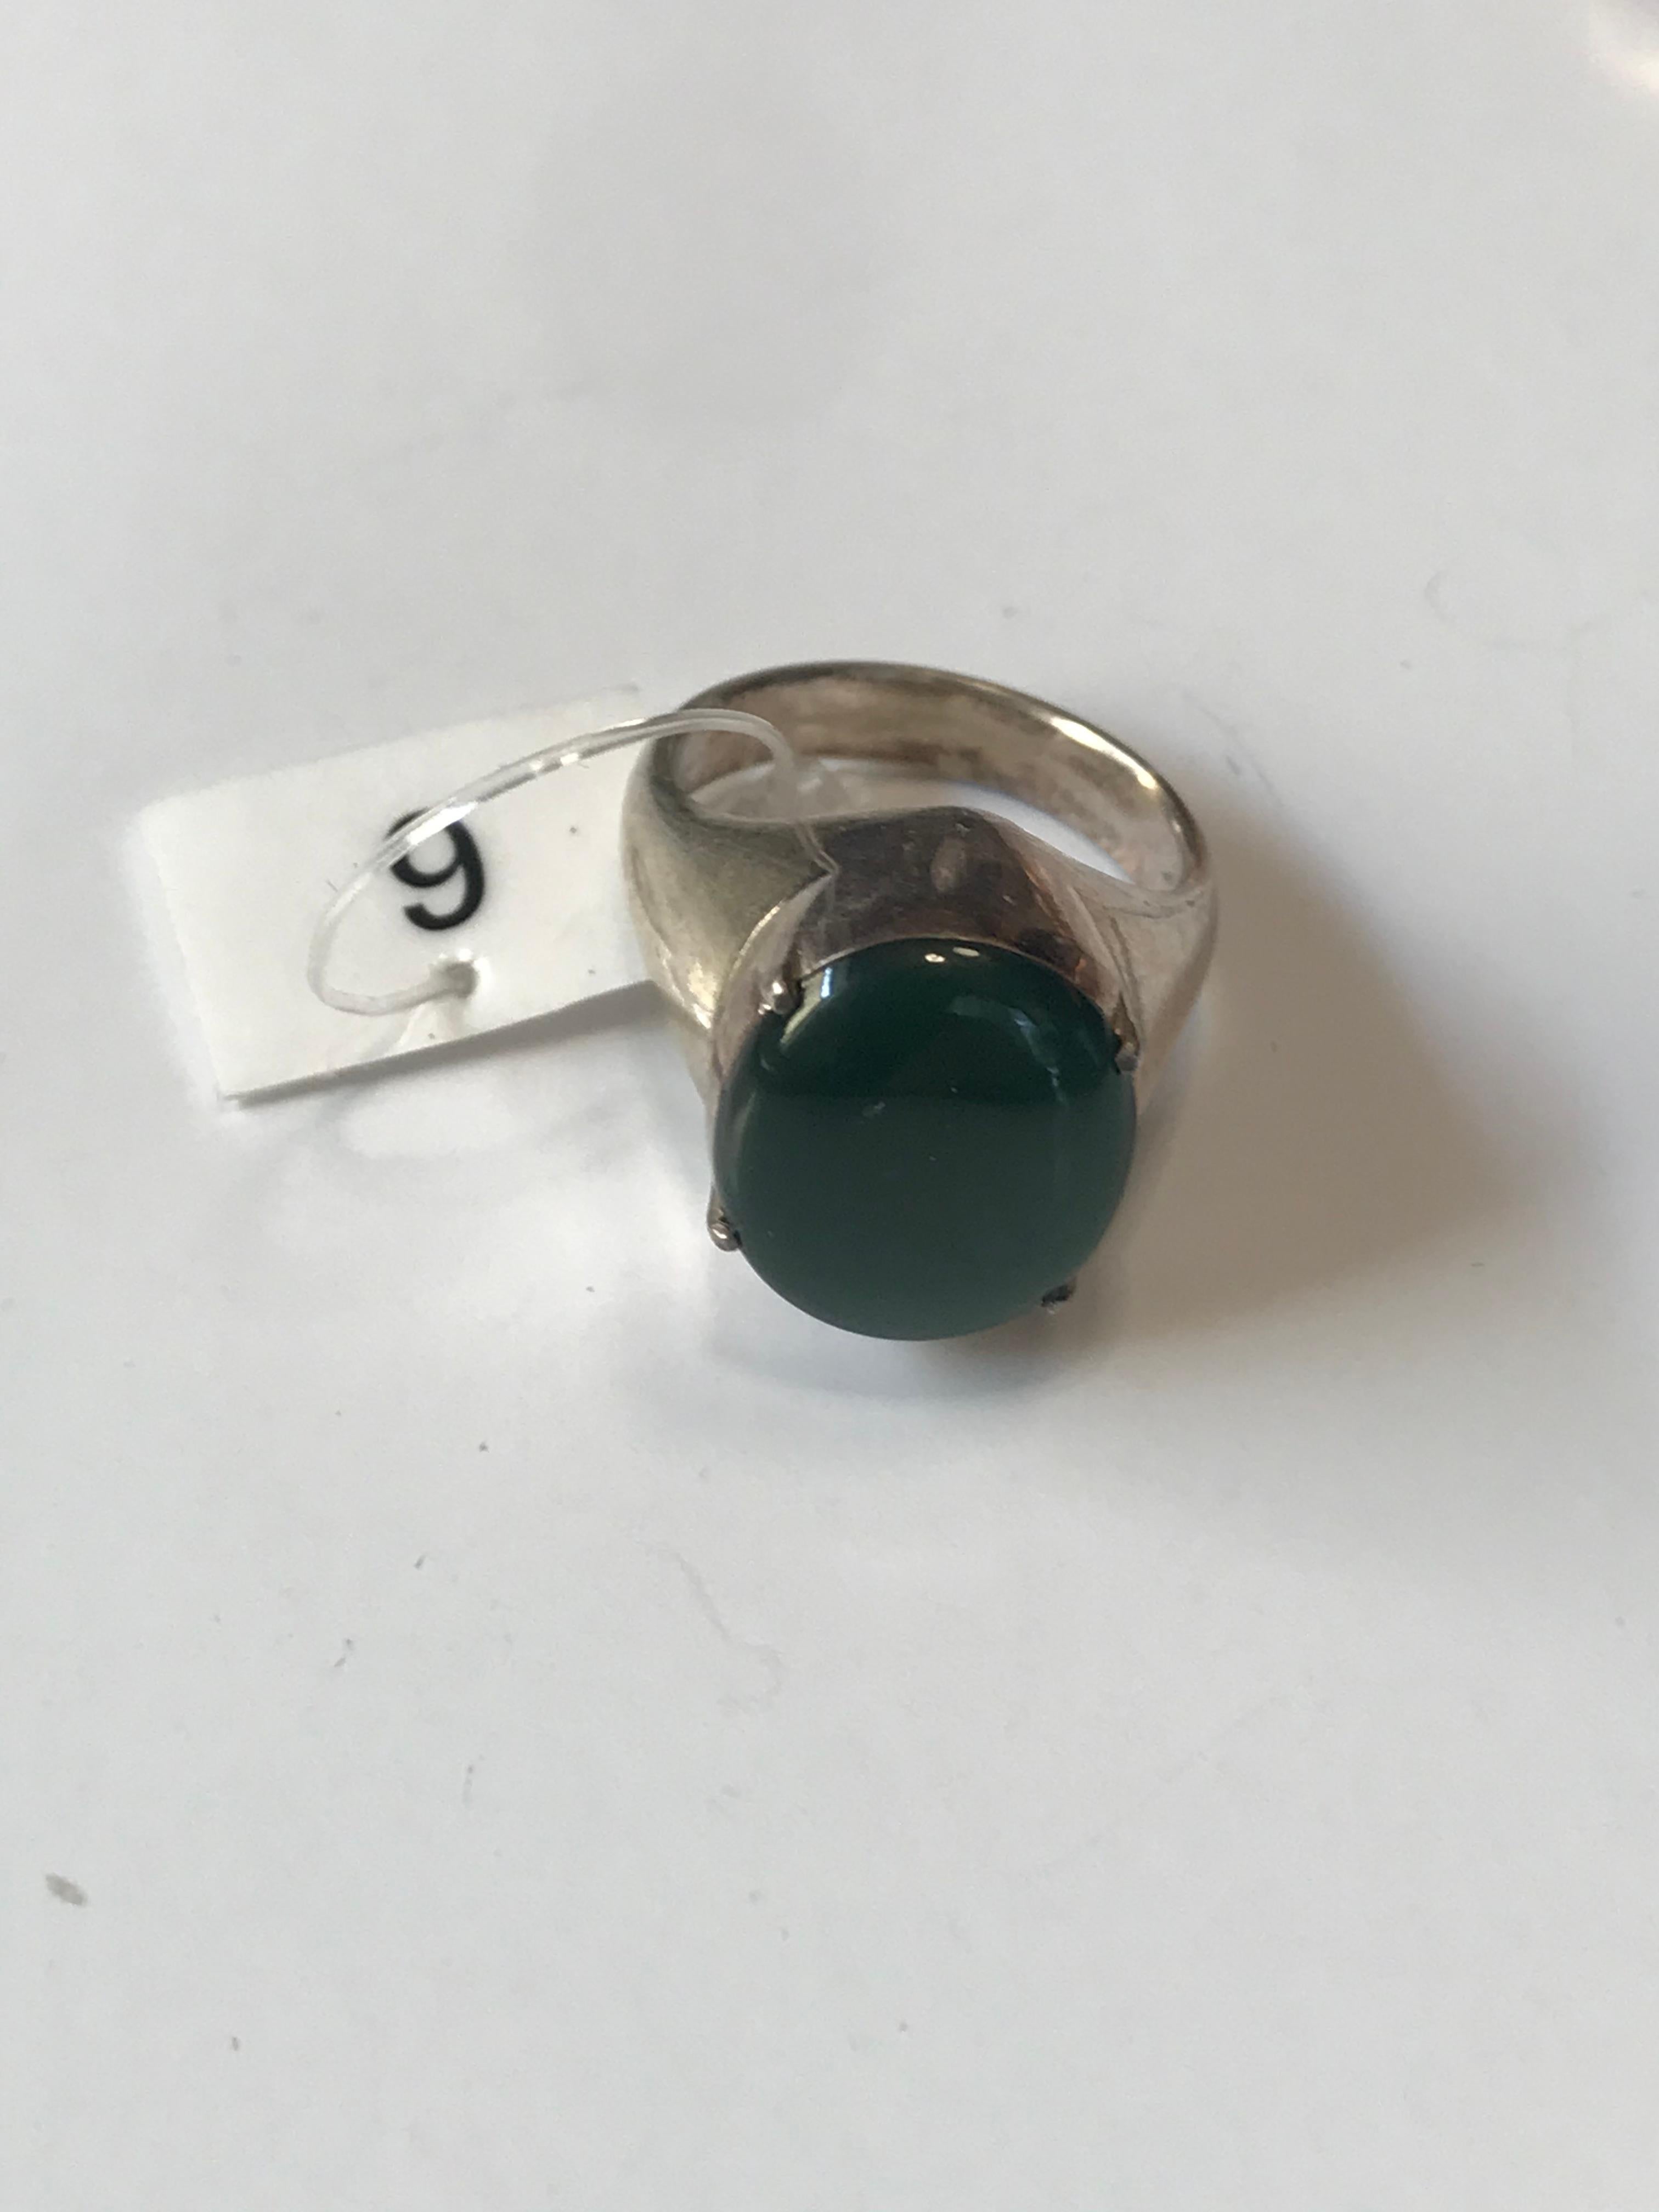 Green Rokan Myanmar Jadeite Loose Stones 5.6 ct Type A #6 For Sale 3